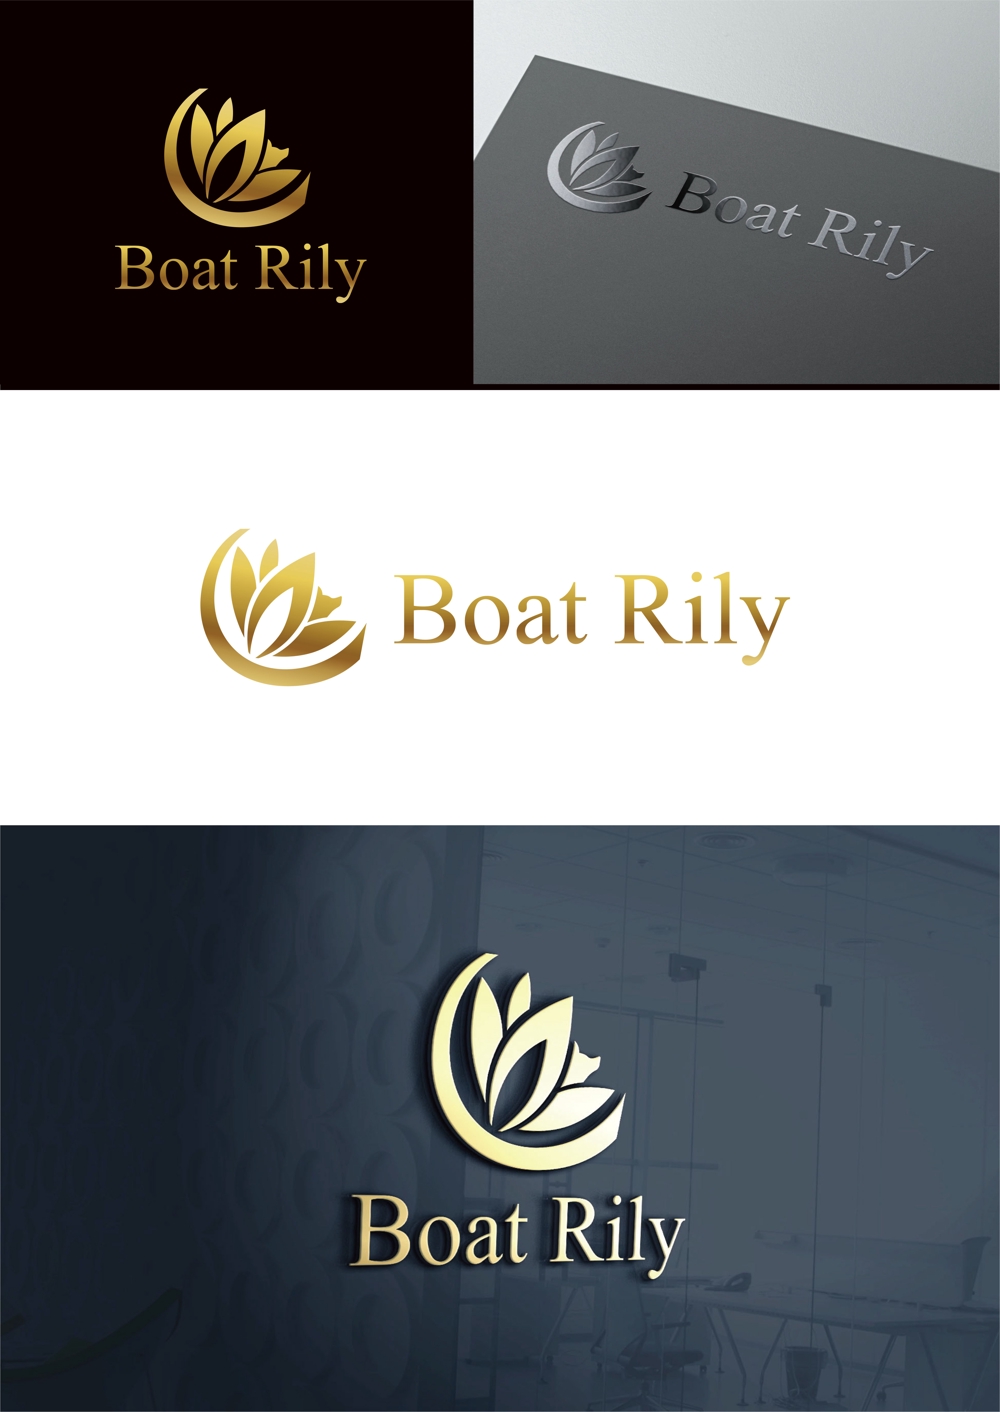 Boat Rily_1.jpg